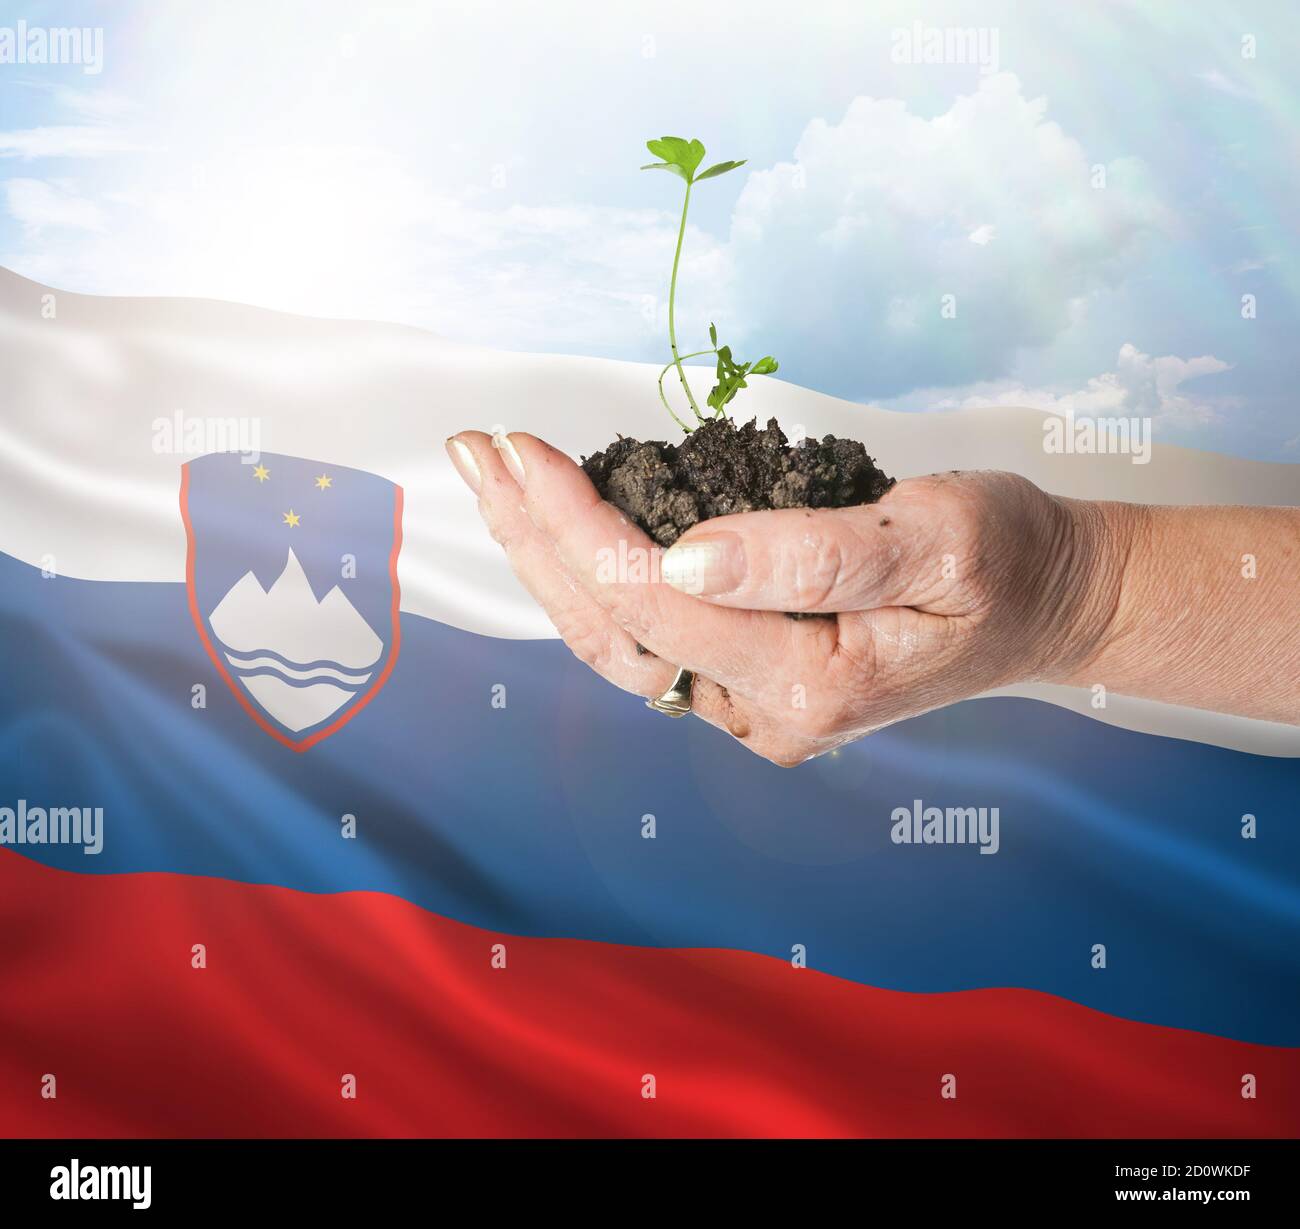 Eslovenia crecimiento y nuevo comienzo. Concepto de energía renovable verde y ecología. Mano sosteniendo planta joven. Foto de stock